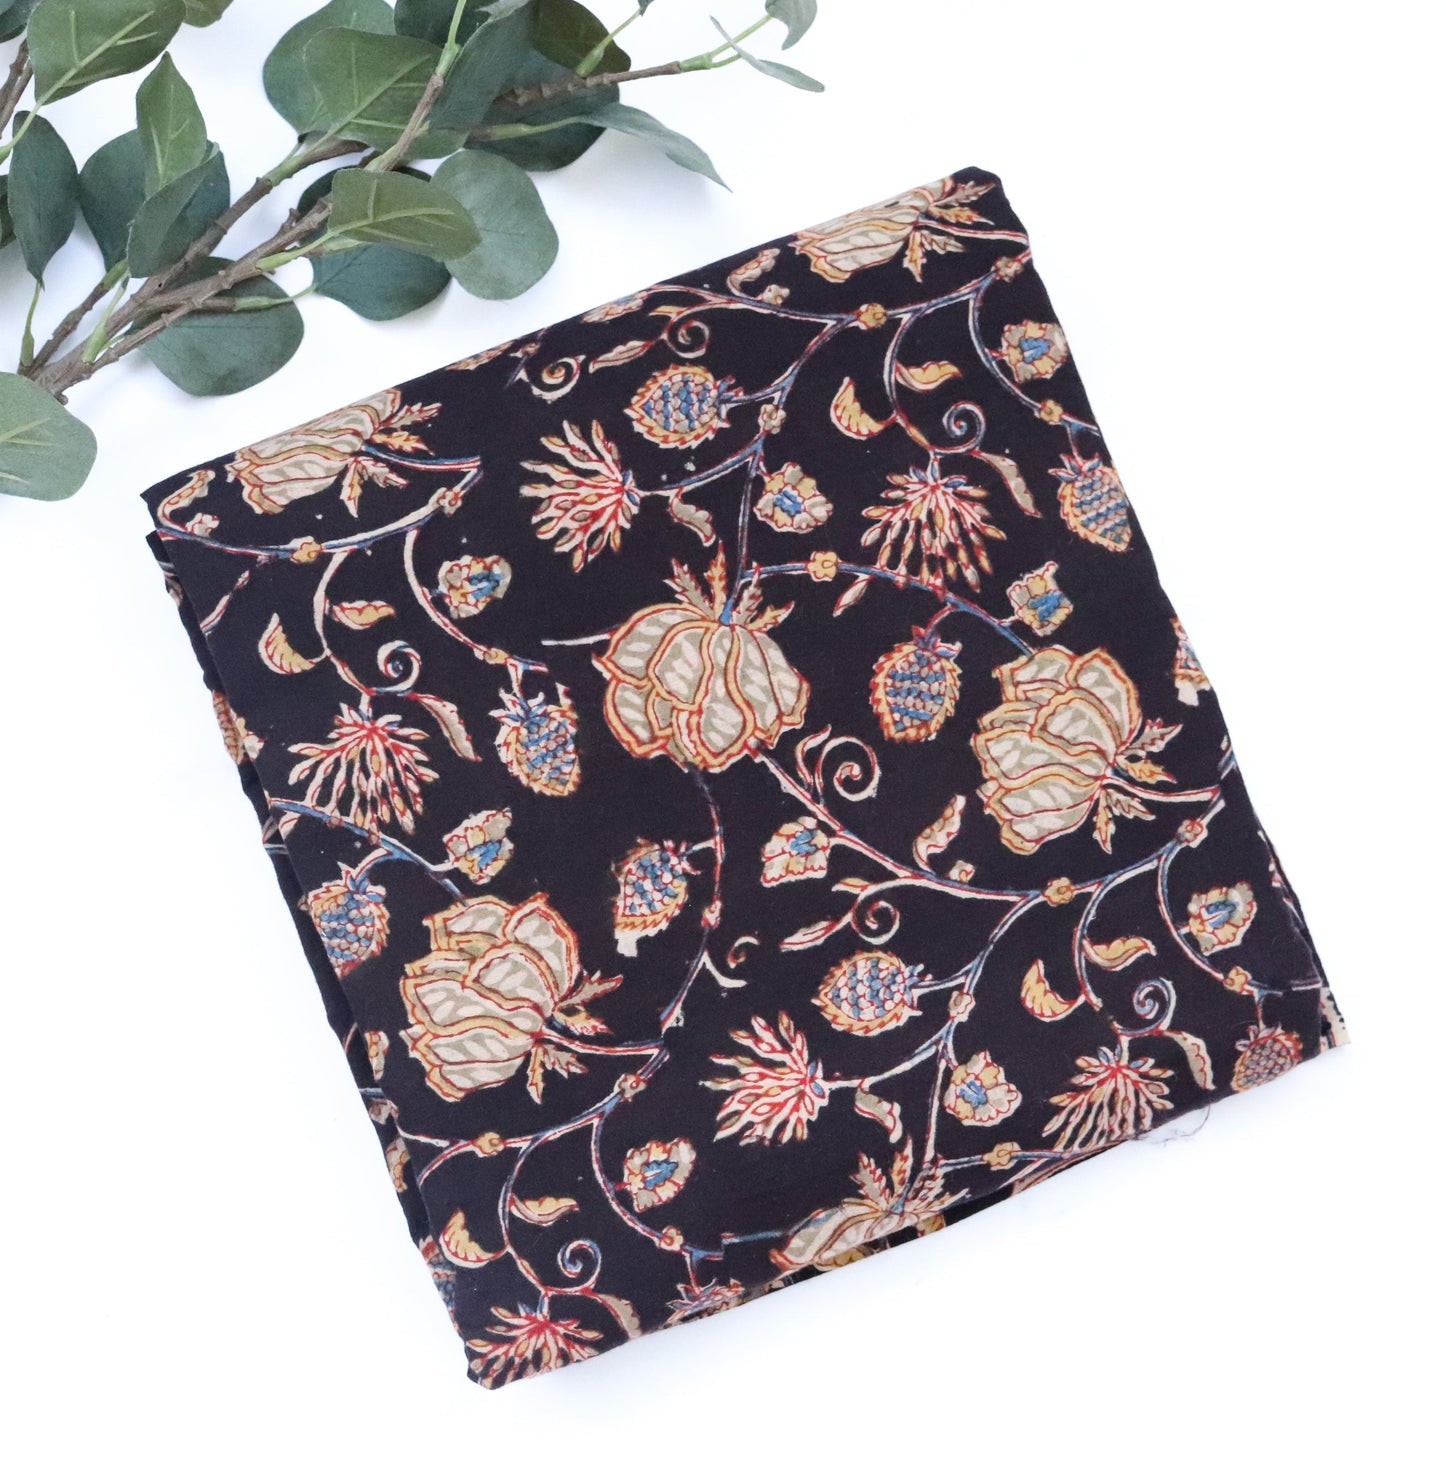 Black Kalamkari block print fabric per meter - Kalamkari - Kurta fabric - Floral Mulmul cotton